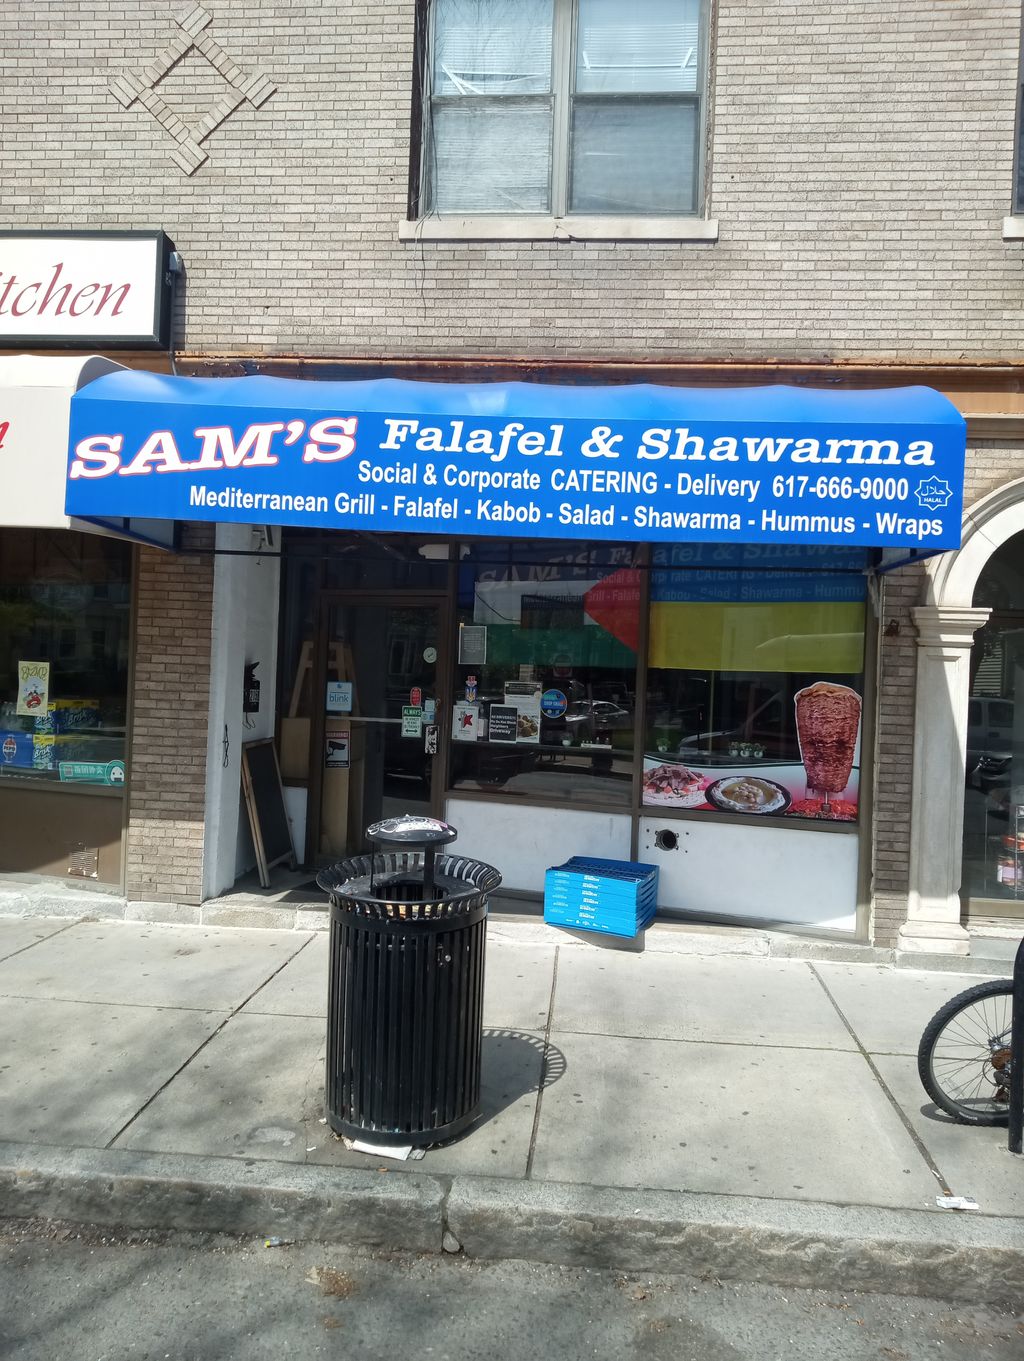 Sams-Falafel-Shawarma